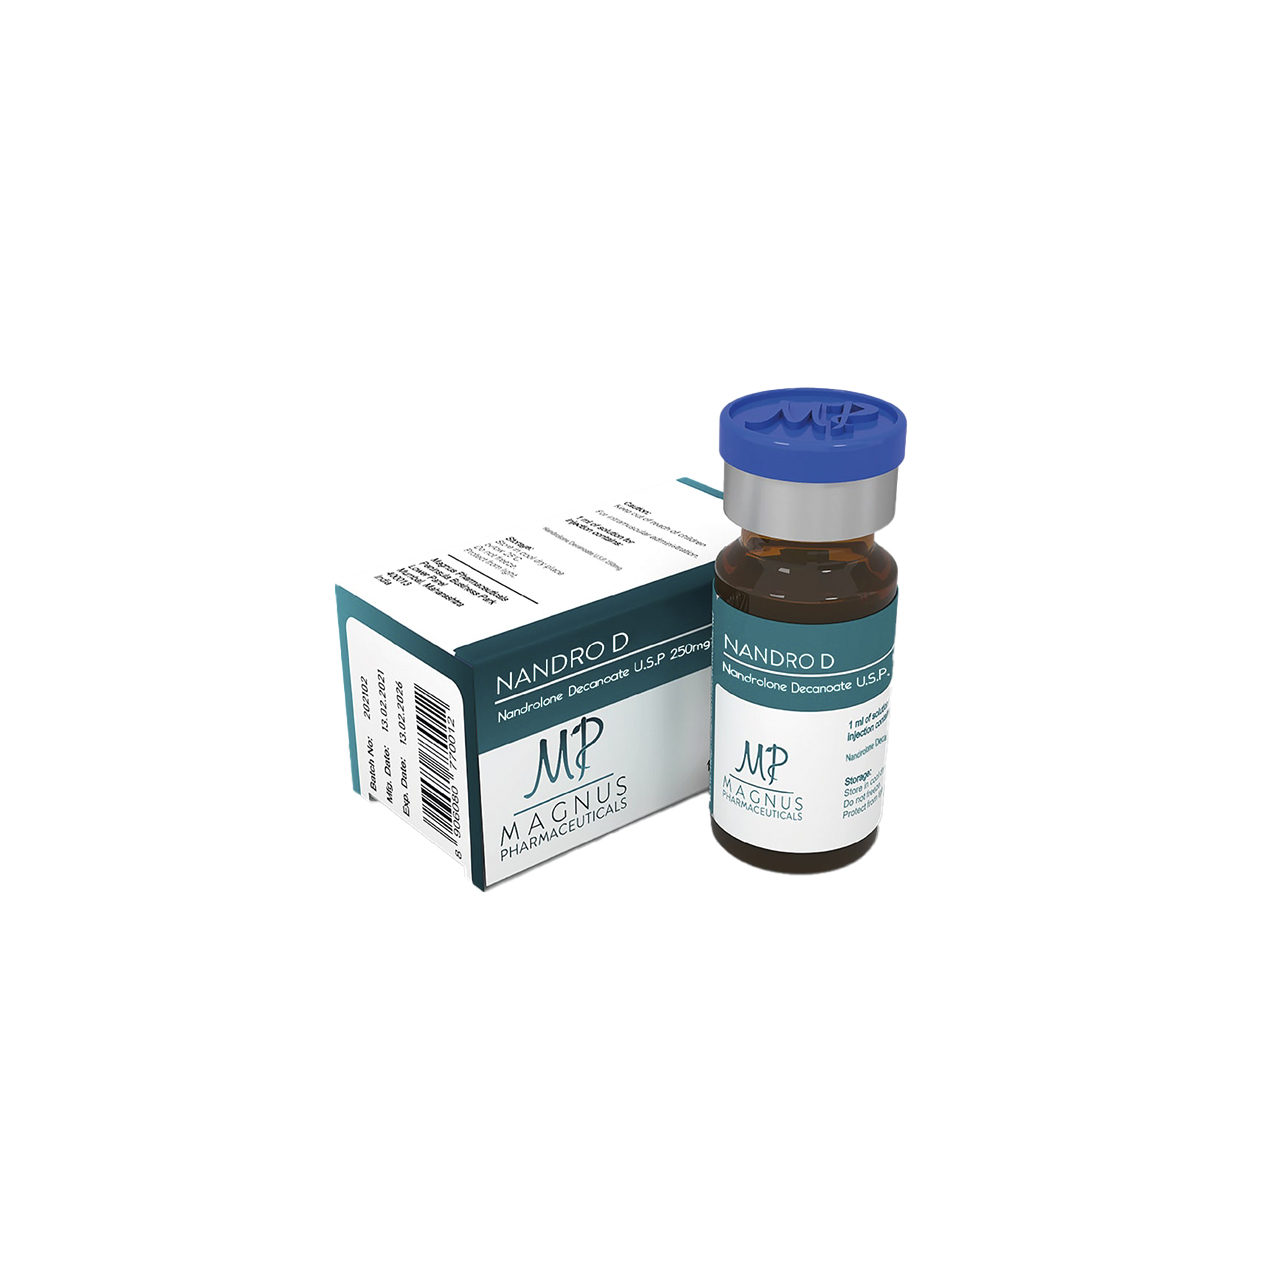 Nandro D (Nandrolone decanoate) 250 mg Magnus Pharmaceuticals Iniezione di steroidi